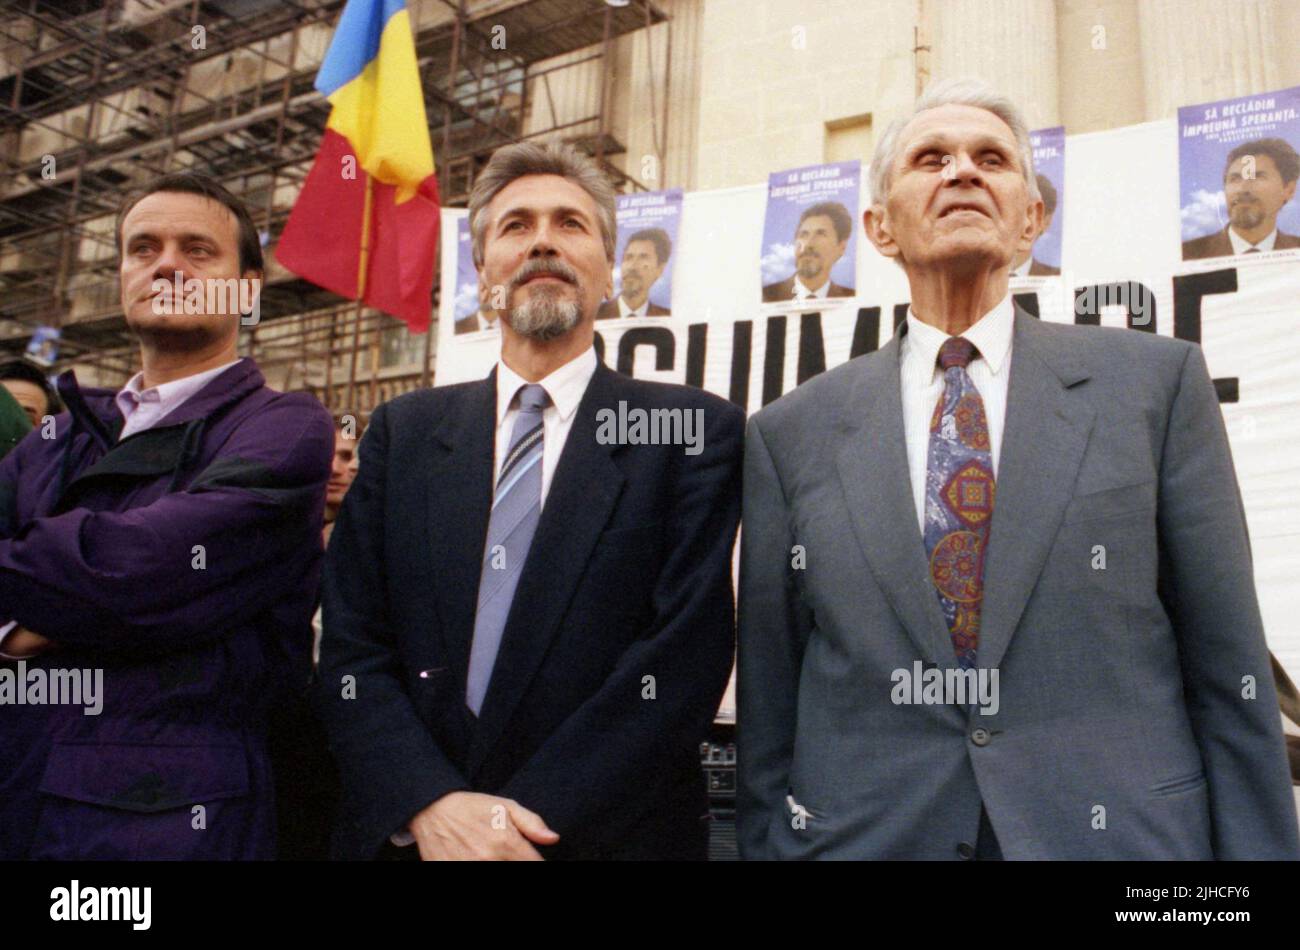 Bucharest, Romania, 1992. Presidents of Convenția Democrată Political Party, Emil Constantinescu (center) & Corneliu Coposu (right). Stock Photo